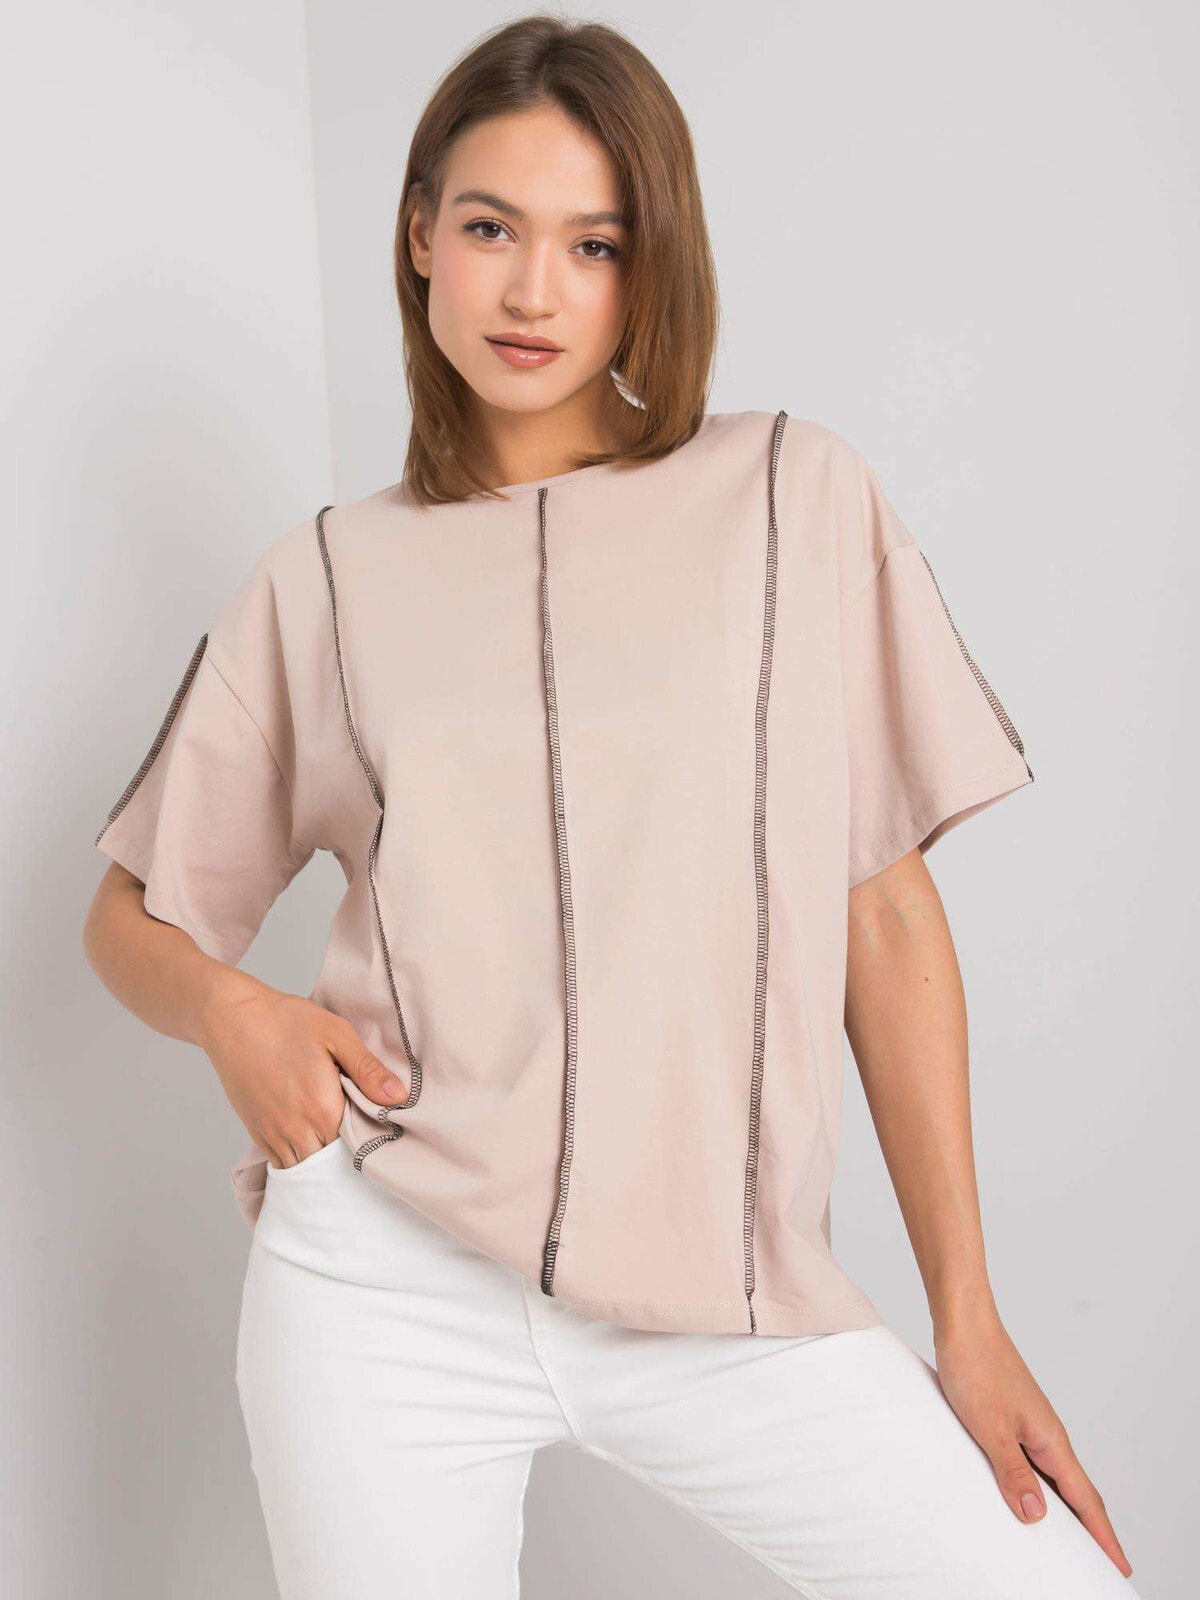 Женская блузка с коротким рукавом свободной посадки - белая Factory Price